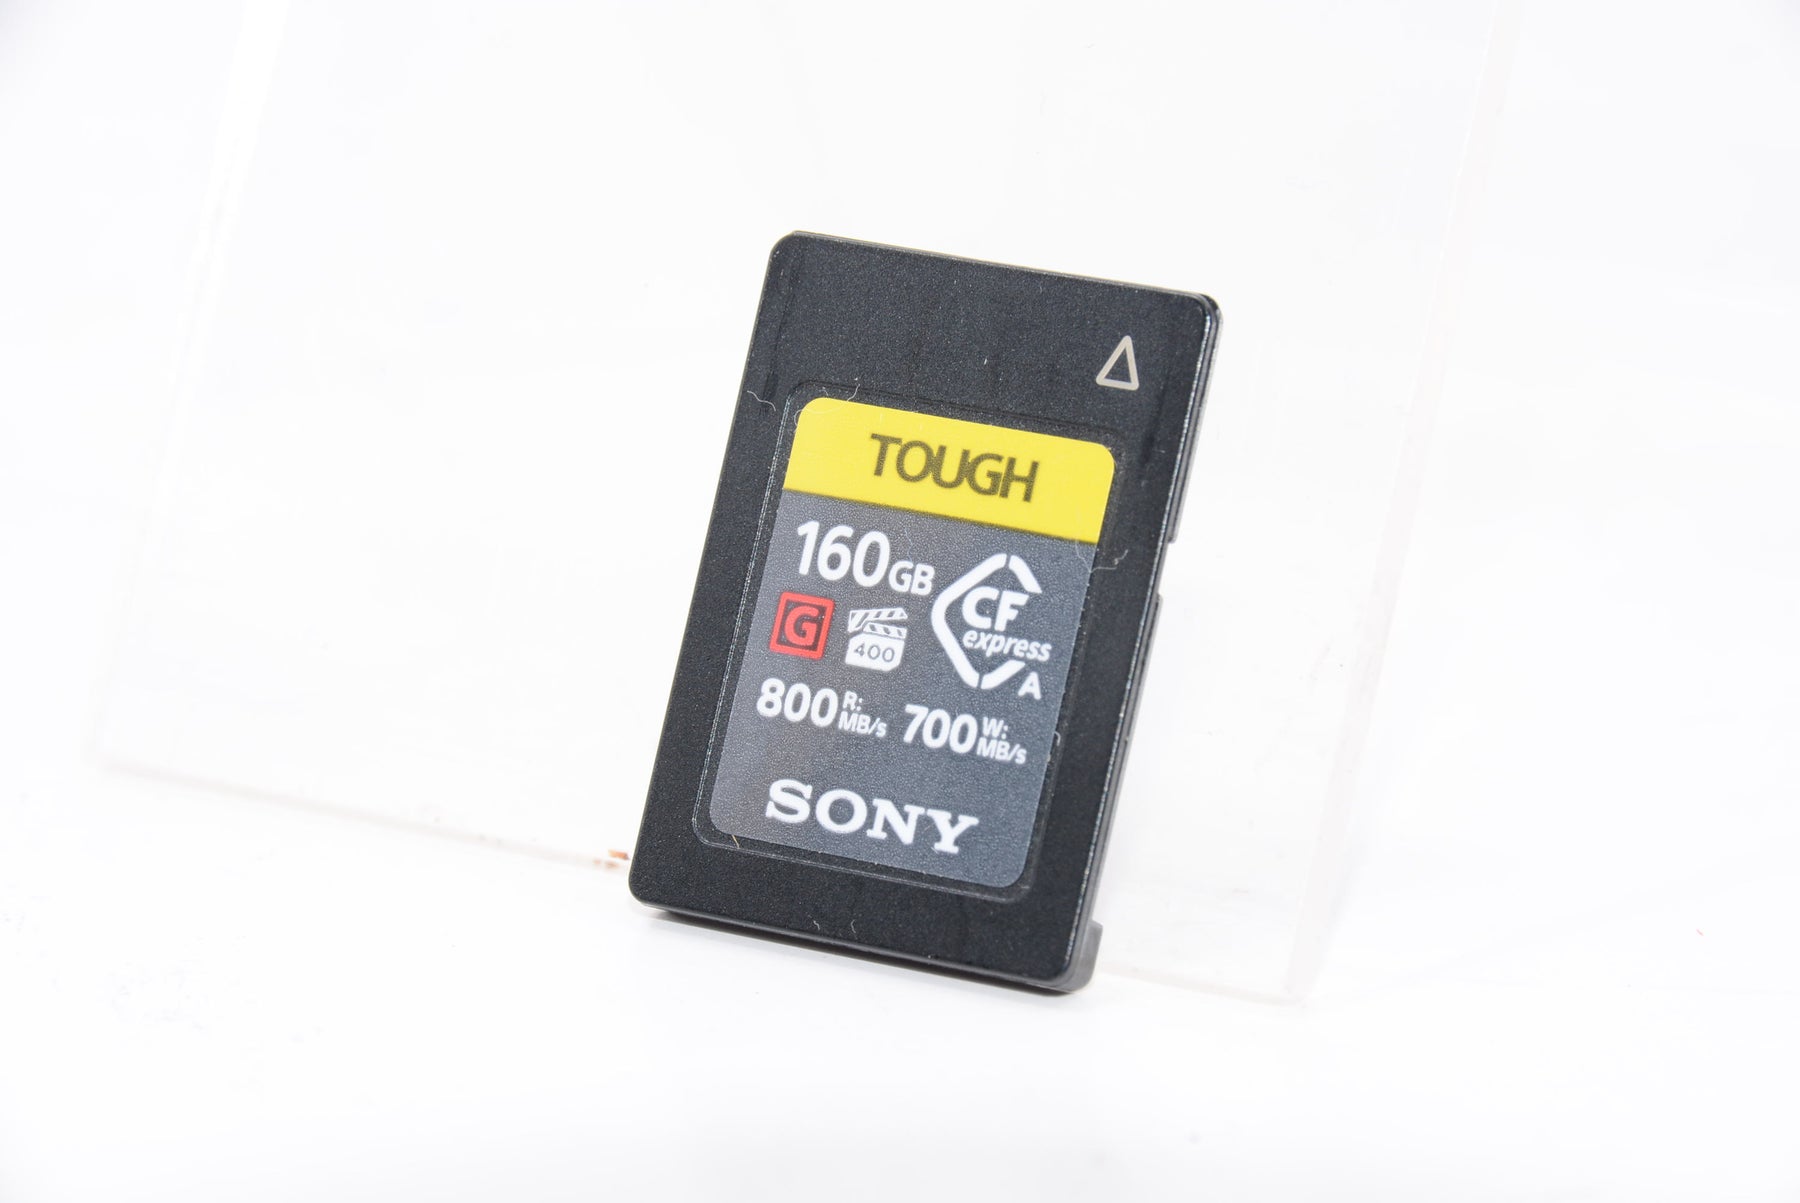 ソニー　CFexpress Type A メモリーカード　TOUGH 160GB